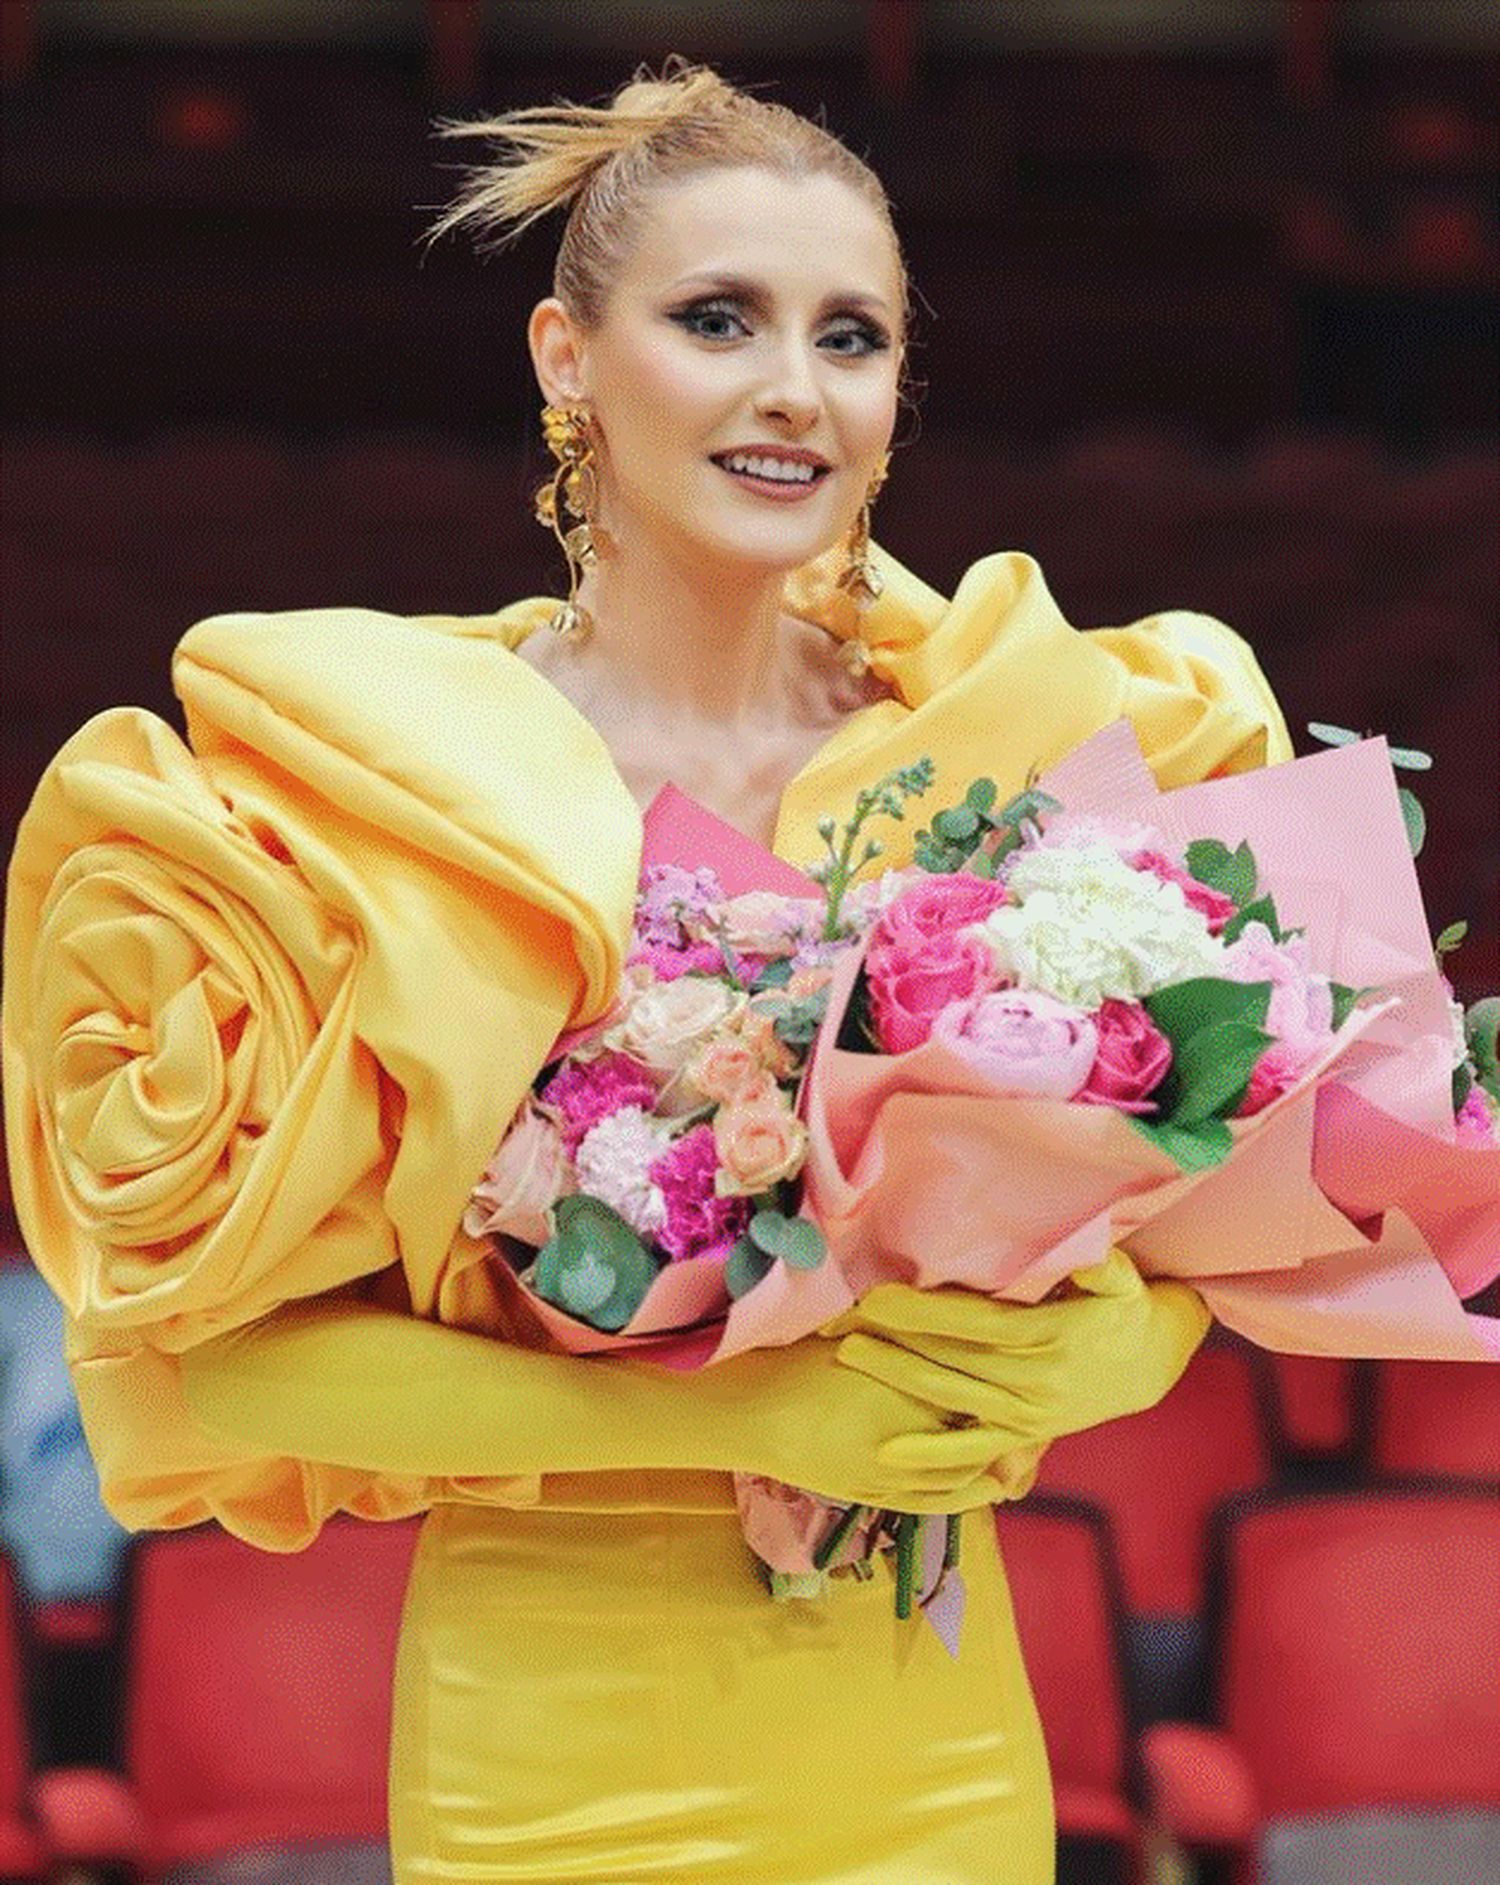 După ce a înșelat-o 11 ani, Alexandru Ciucu se laudă cu un buchet de flori dus soției Alina Sorescu